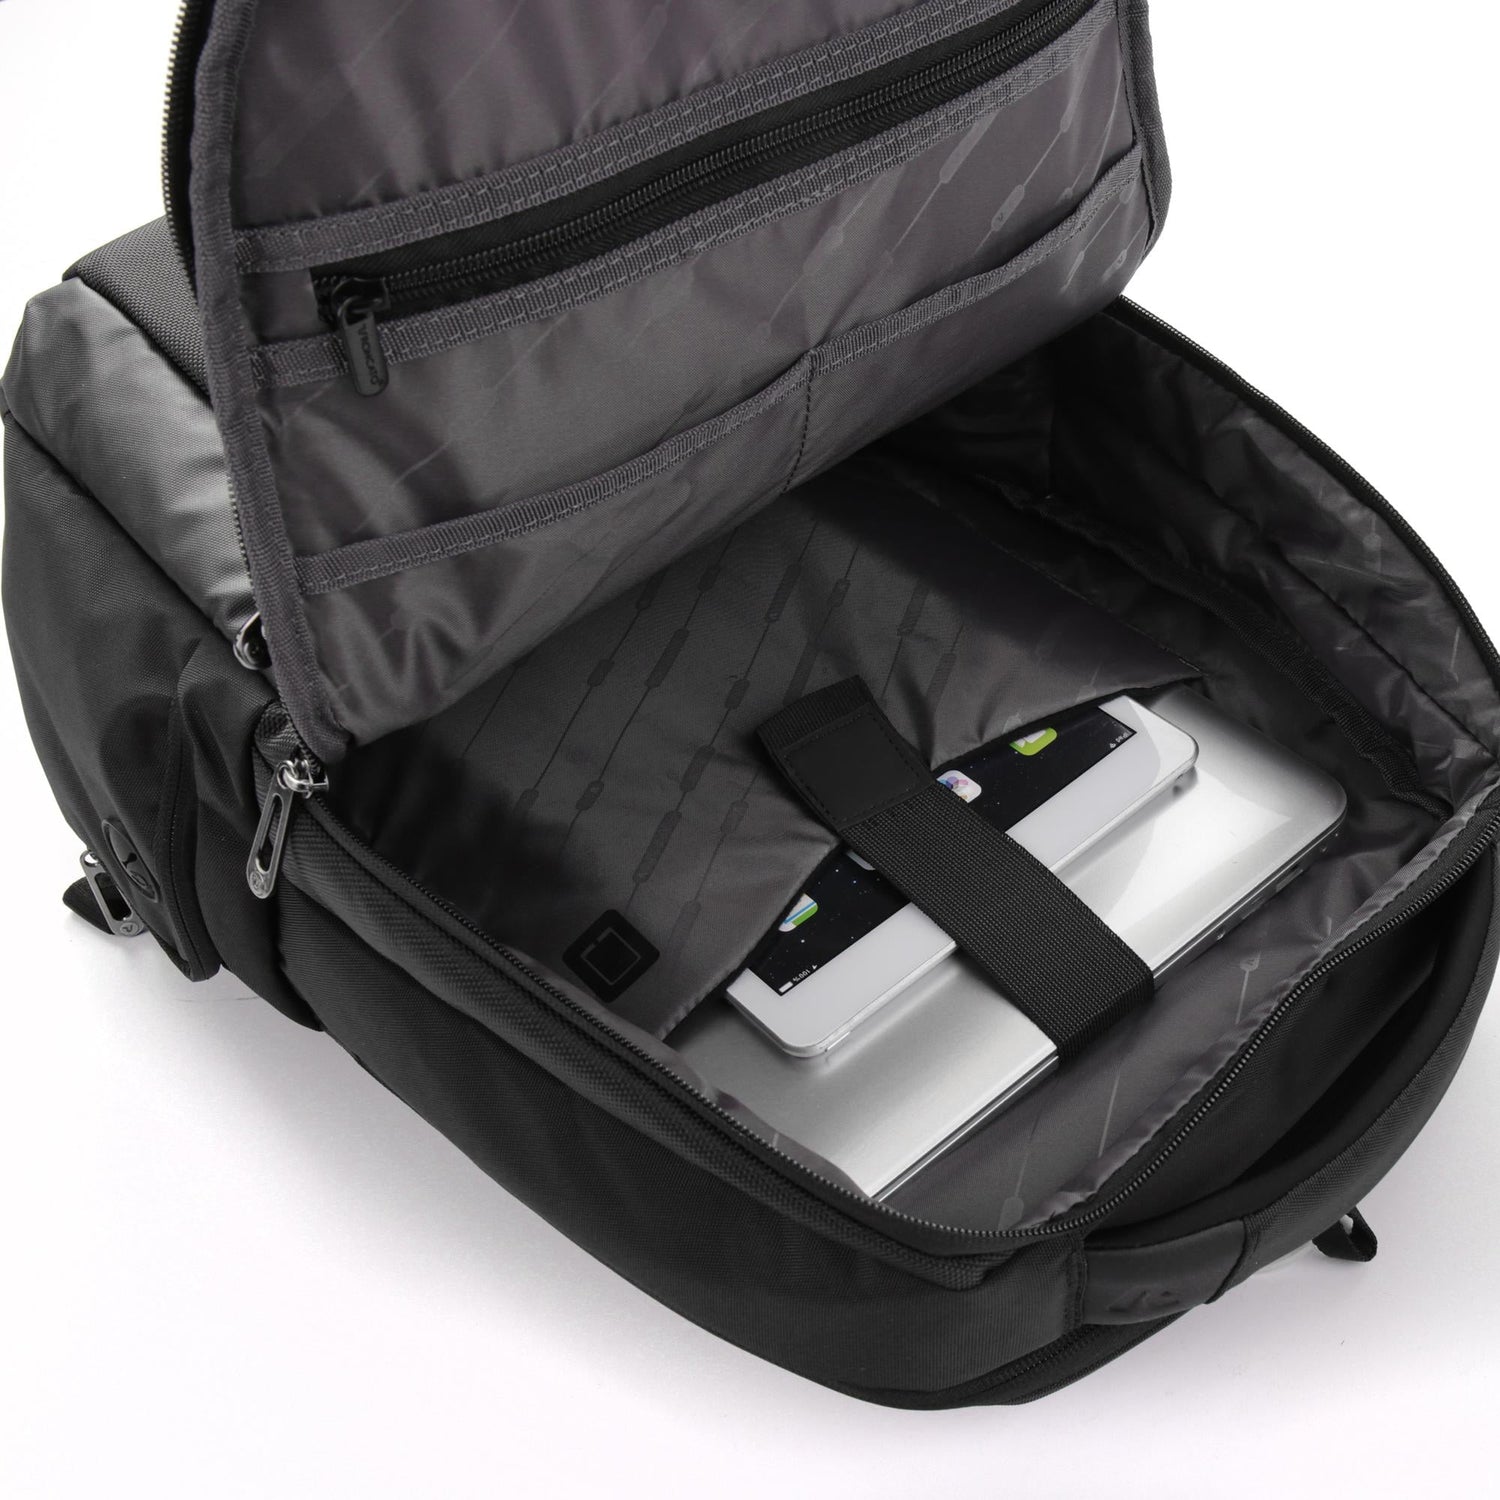 Zaino Roncato Desk - Porta PC 15,6 e Tablet 10 417181 – Scarpe